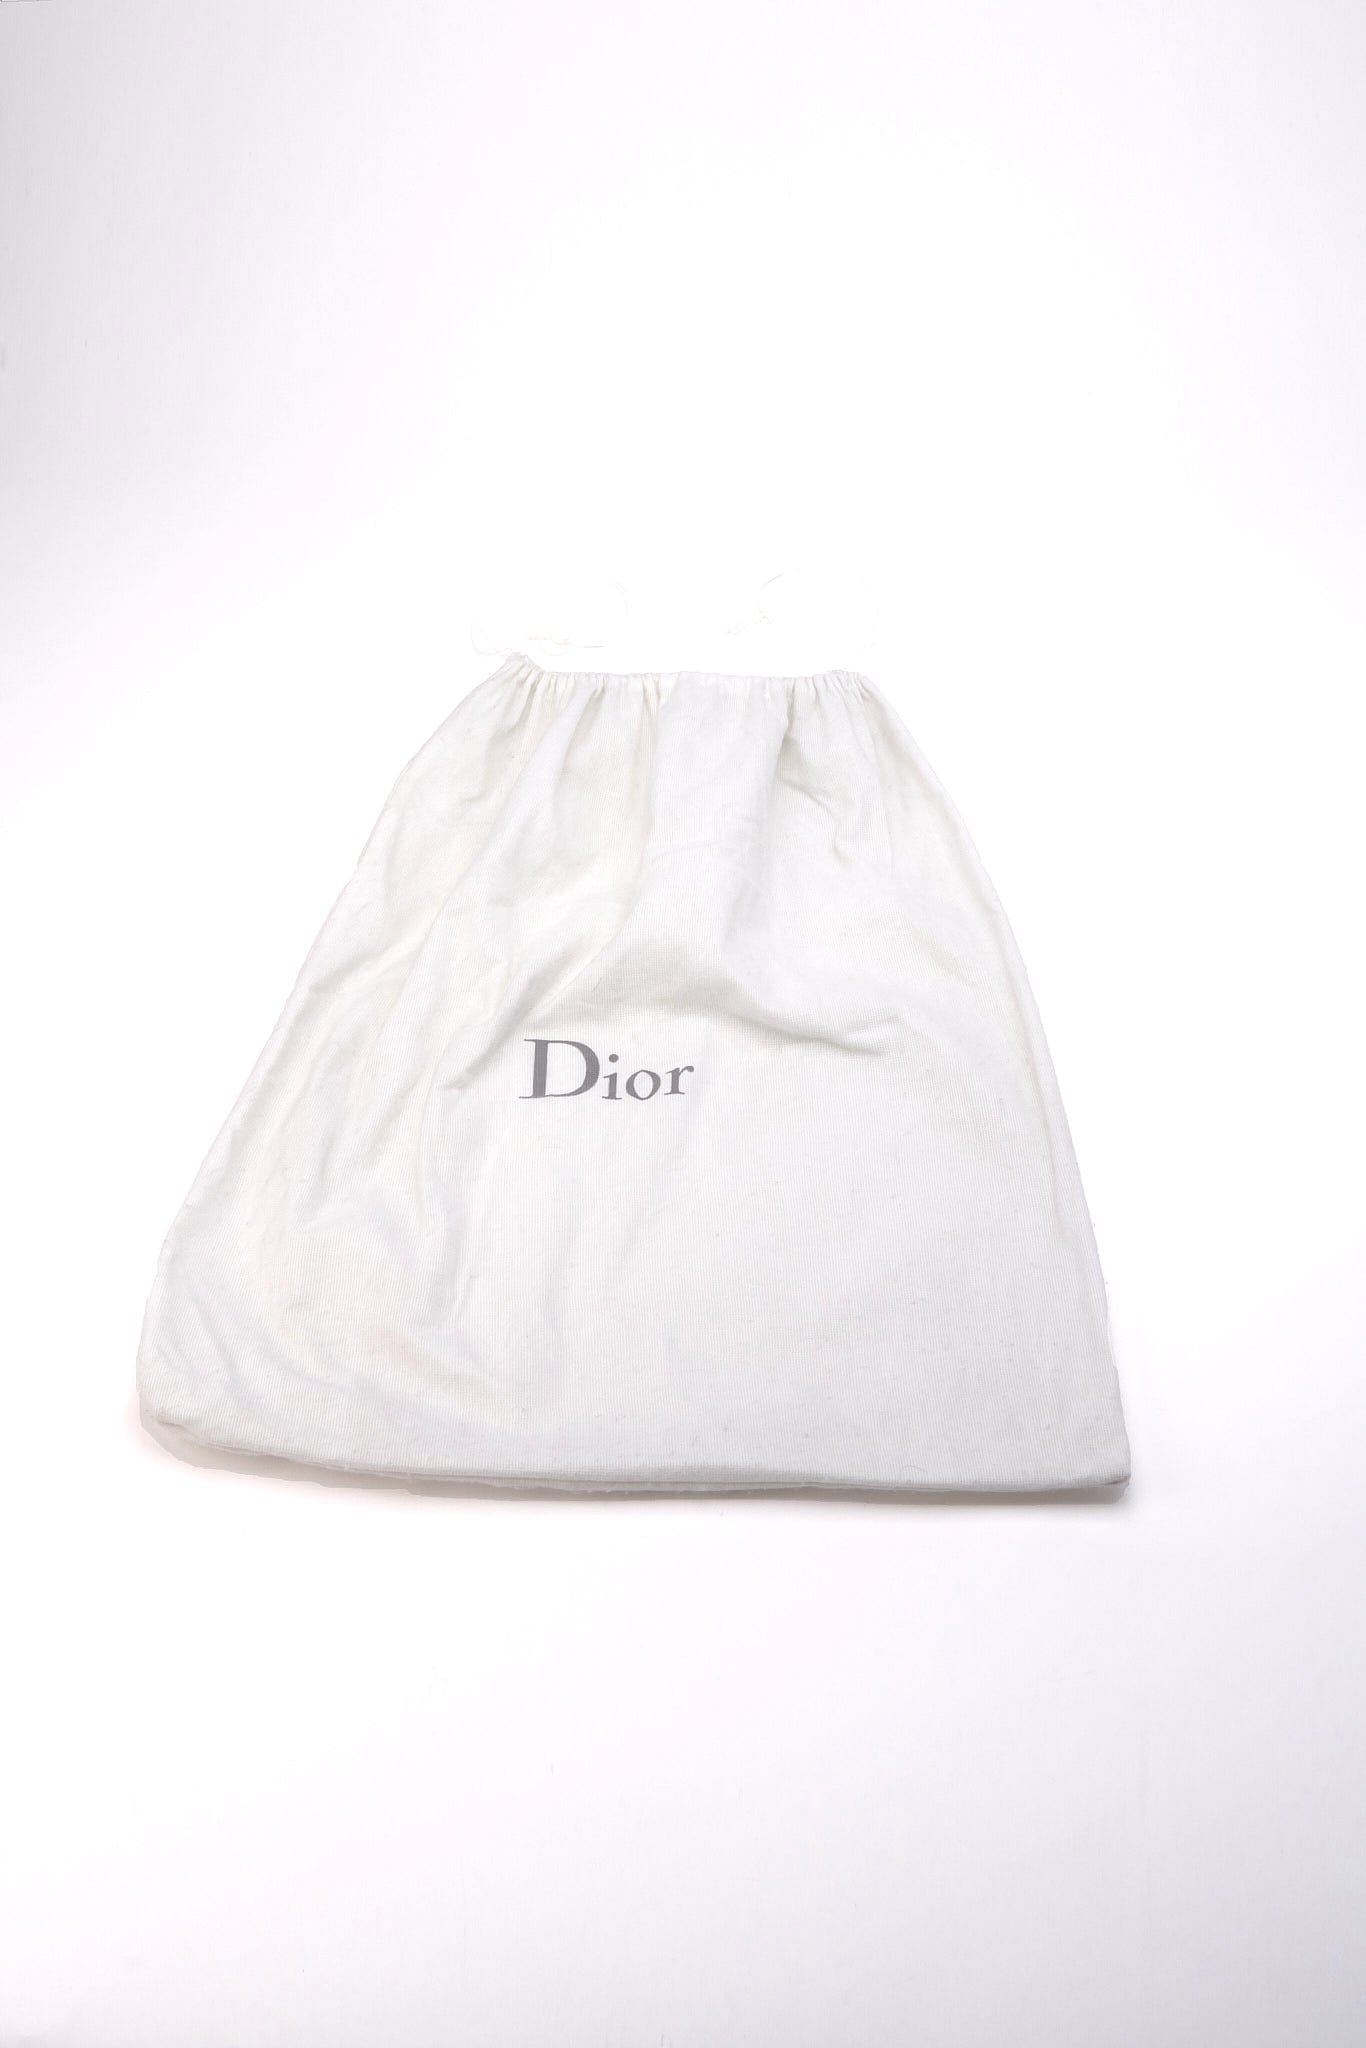 Vintage Christian Dior Nylon Cream Shoulder Bag